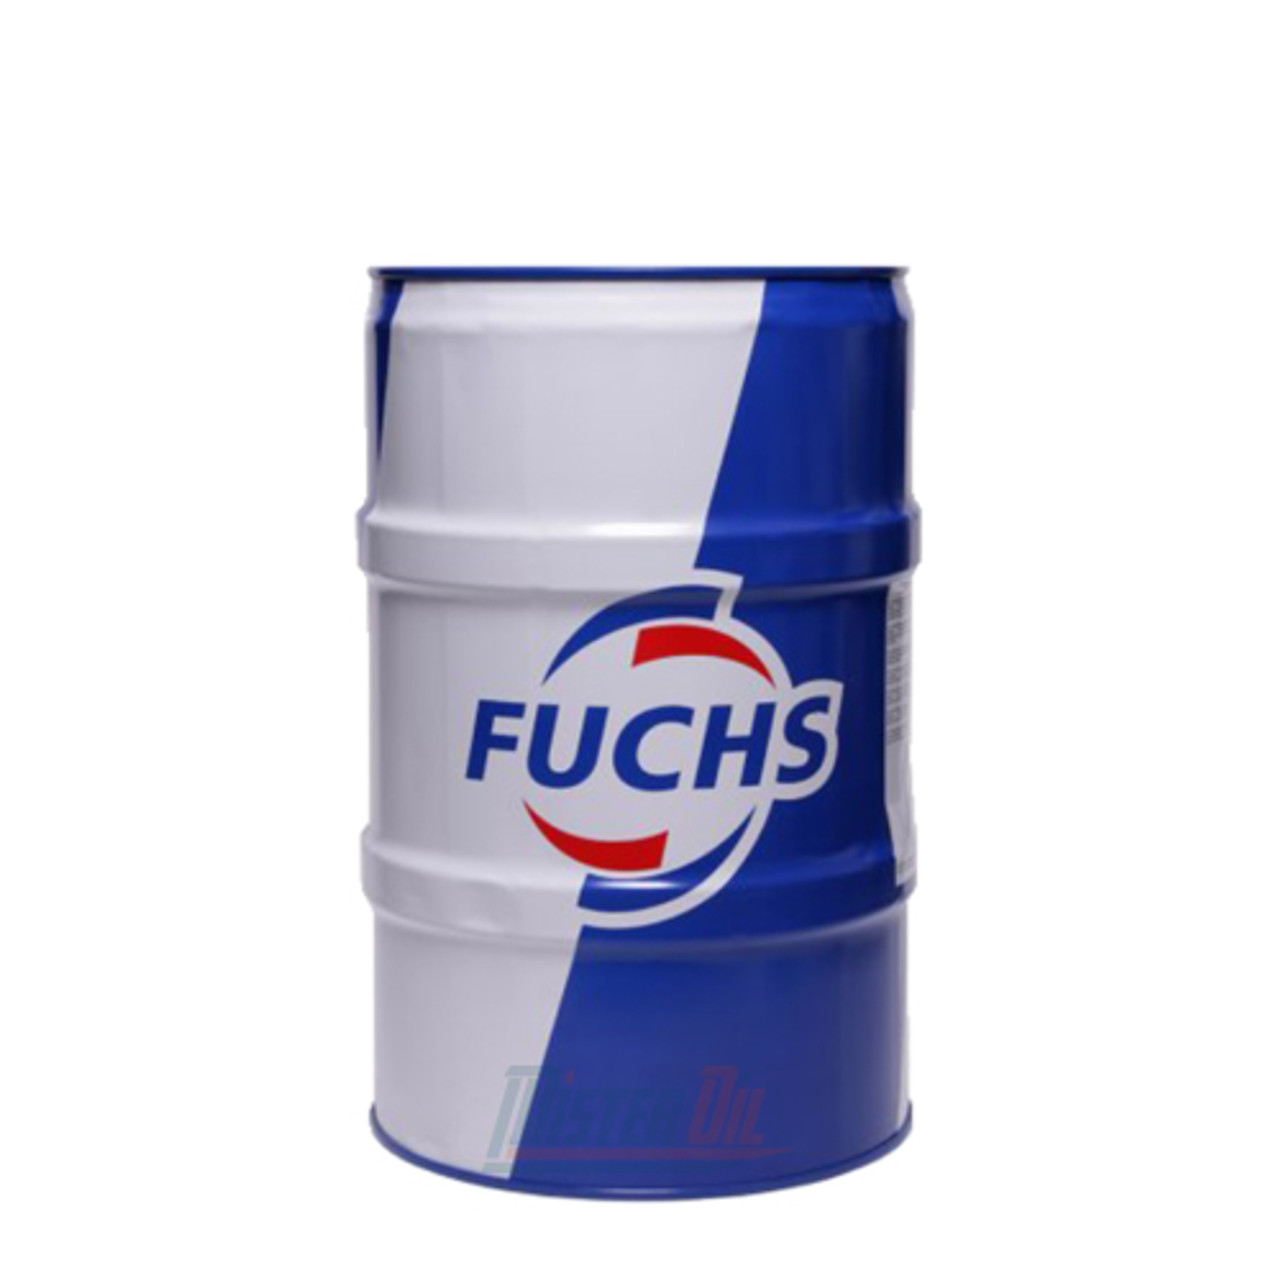 Fuchs Stabylan CL 518 - 55 Gallon Drum